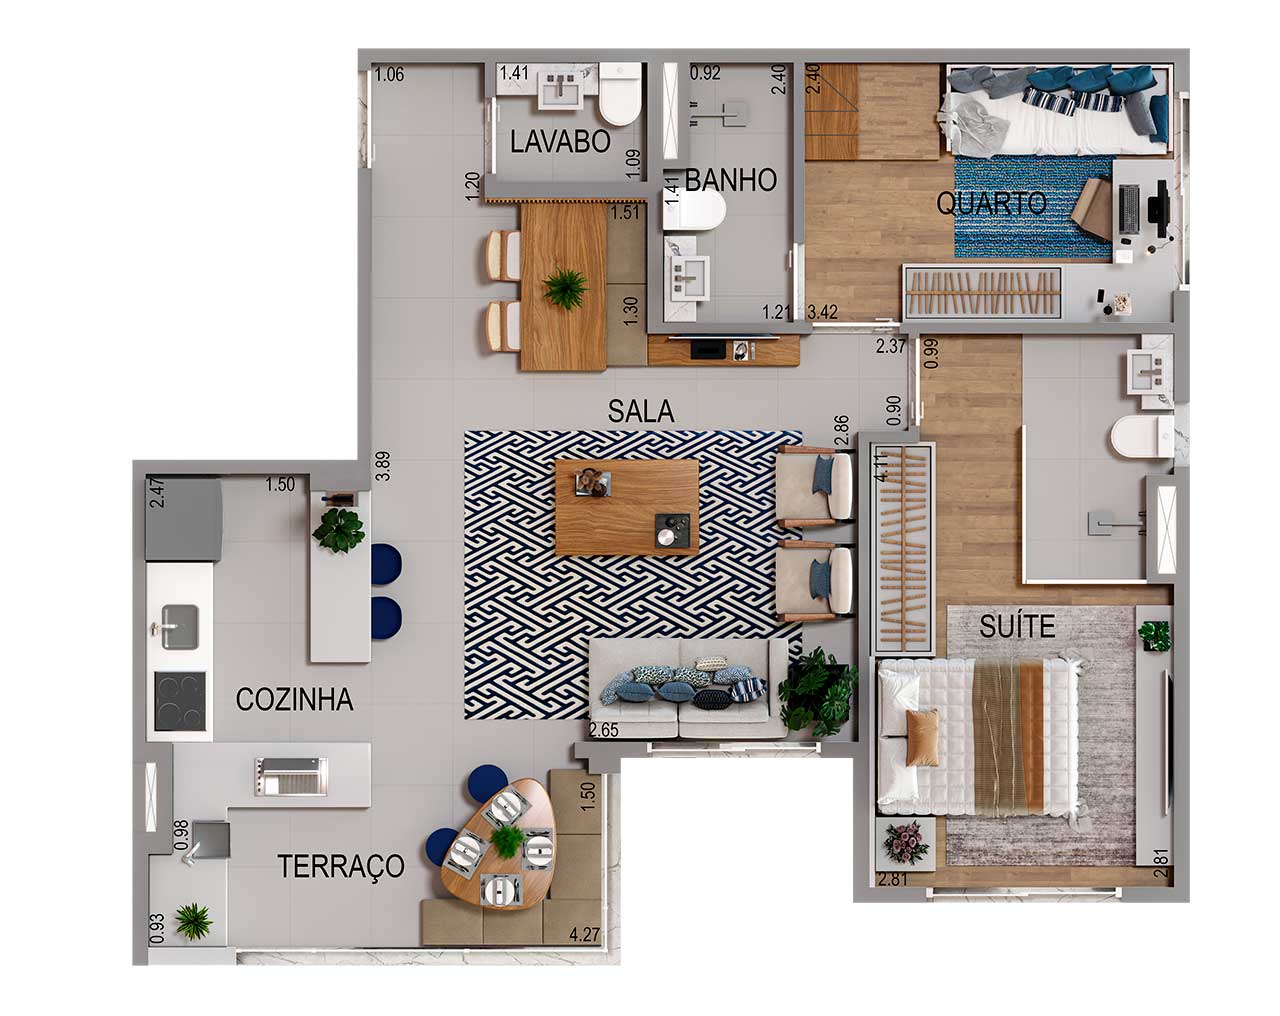 Planta 69m² - 3 Dormitórios, sala ampliada, 1 suíte e 2 vagas de garagem - Acqua Park Barueri